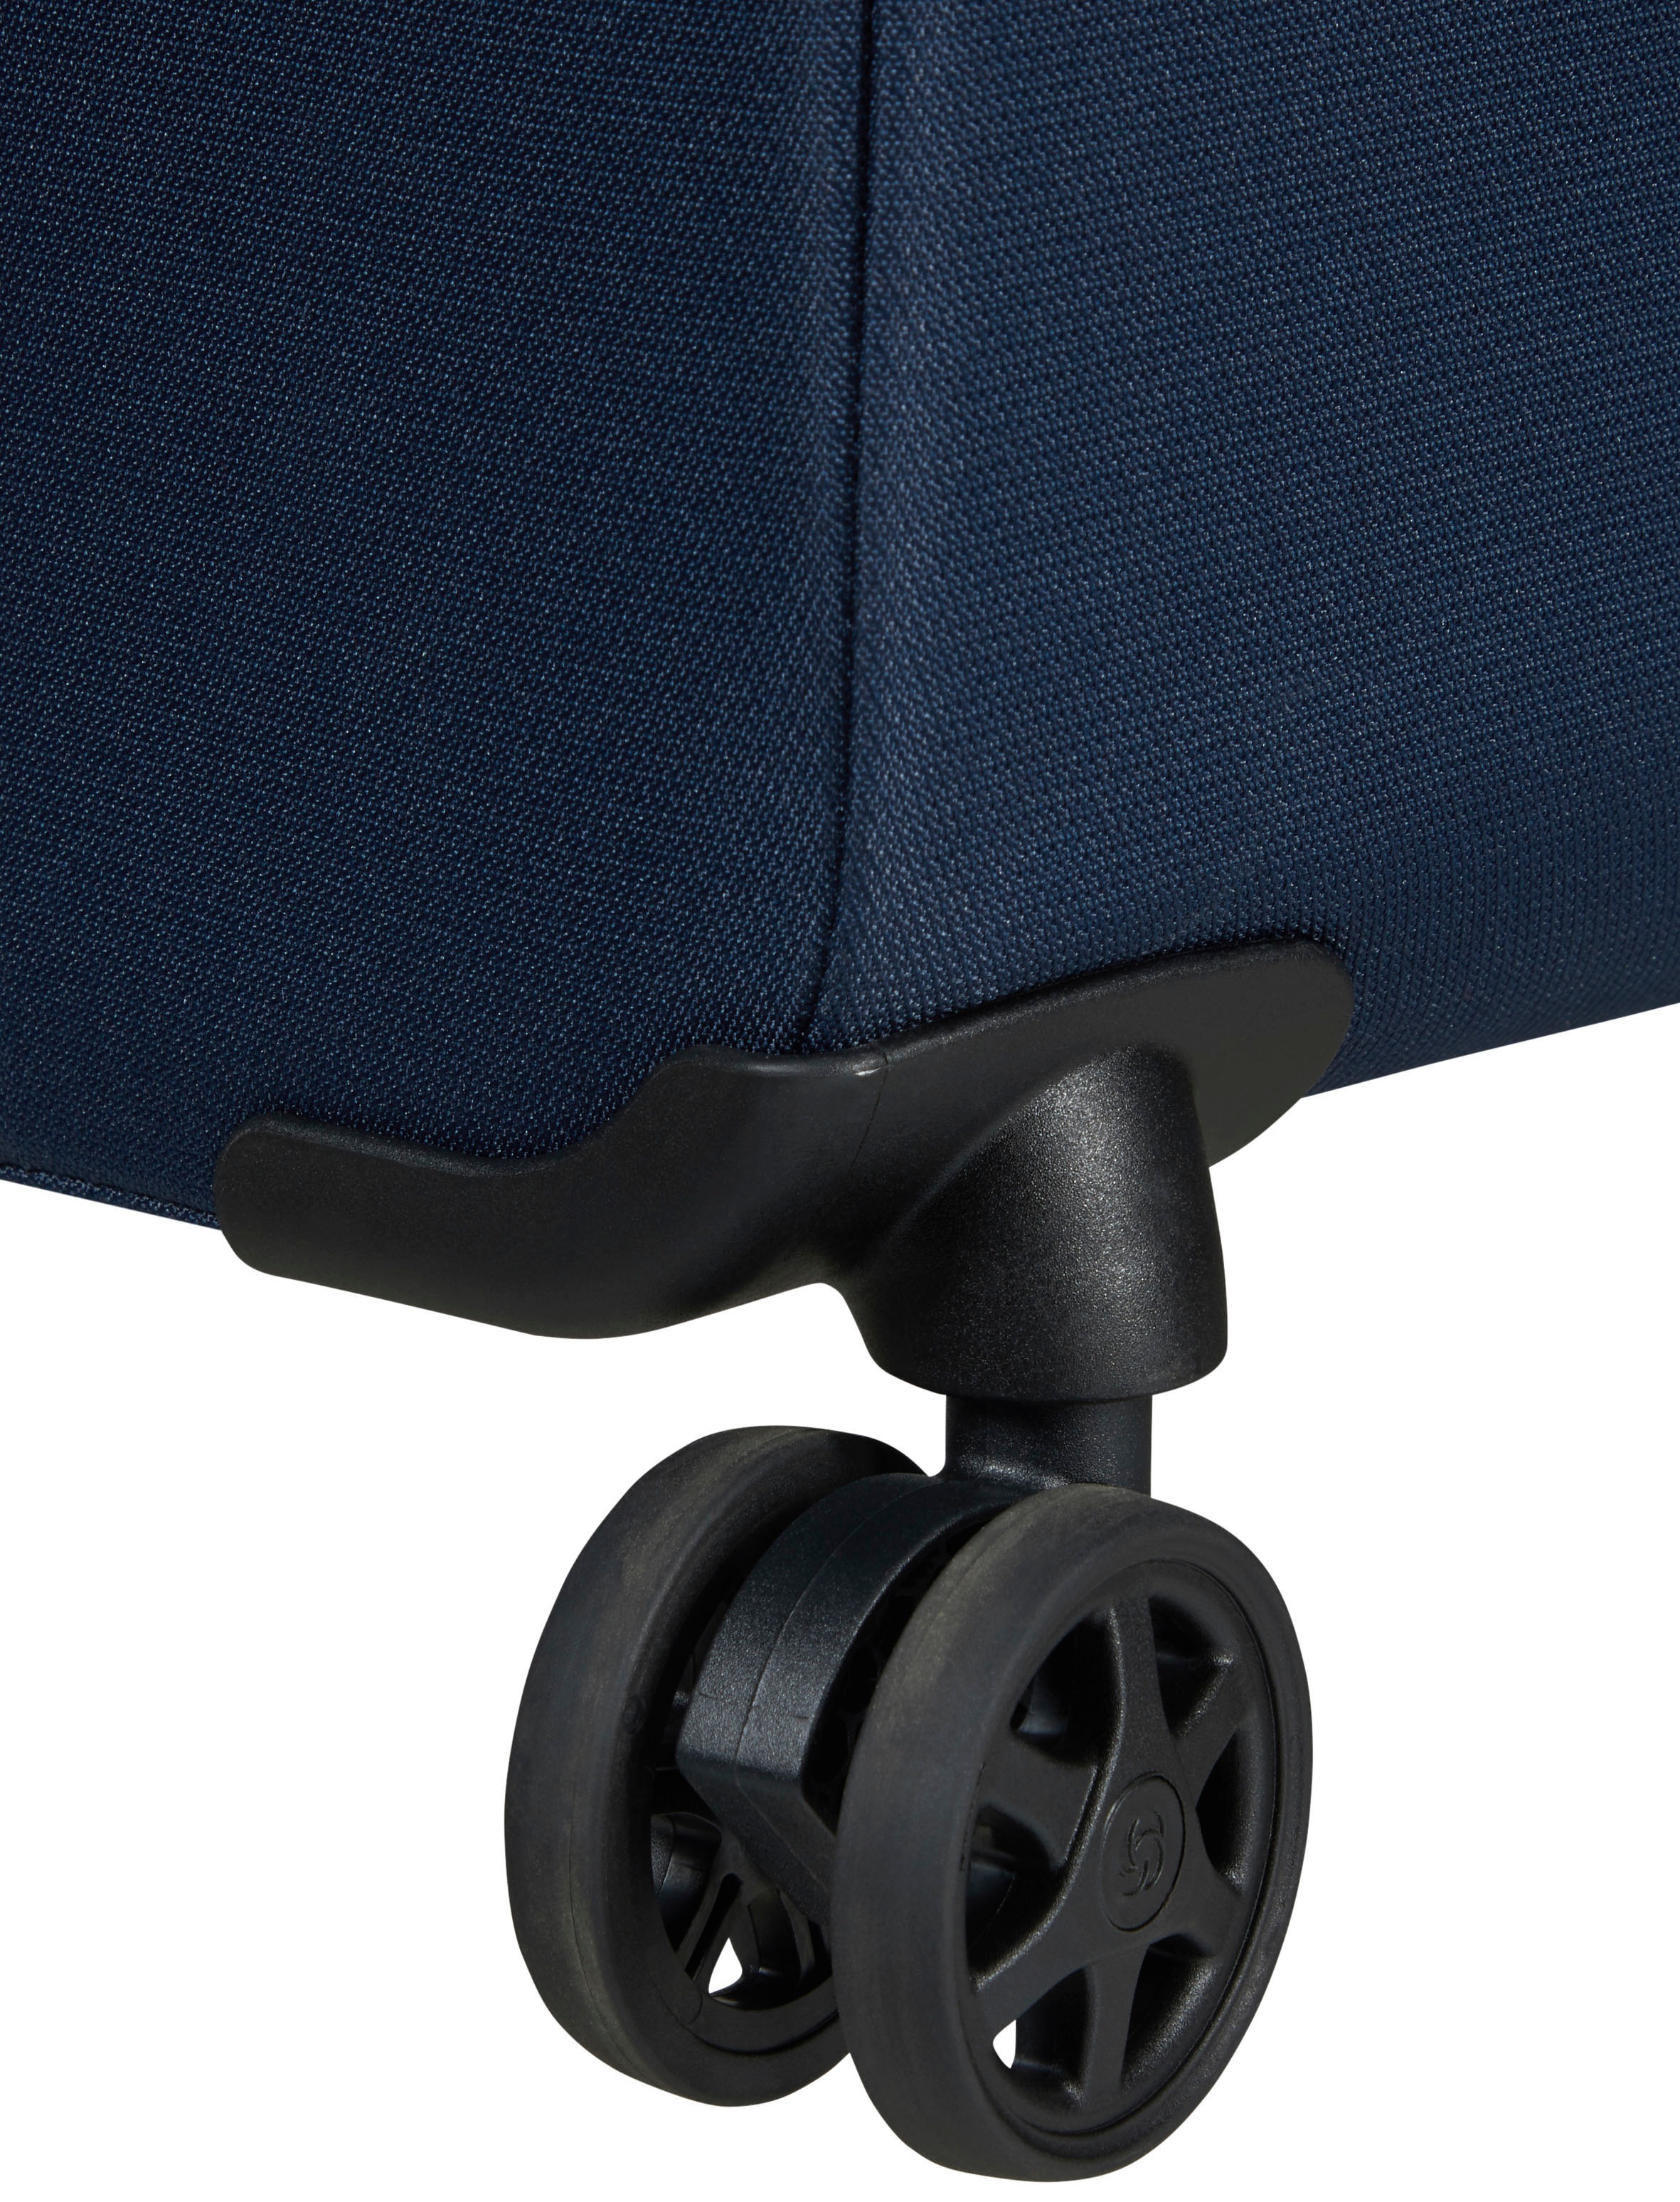 Samsonite Weichgepäck-Trolley »Litebeam, midnight blue, 66 cm«, 4 Rollen, Reisekoffer Aufgabegepäck Reisegepäck mit Volumenerweiterung